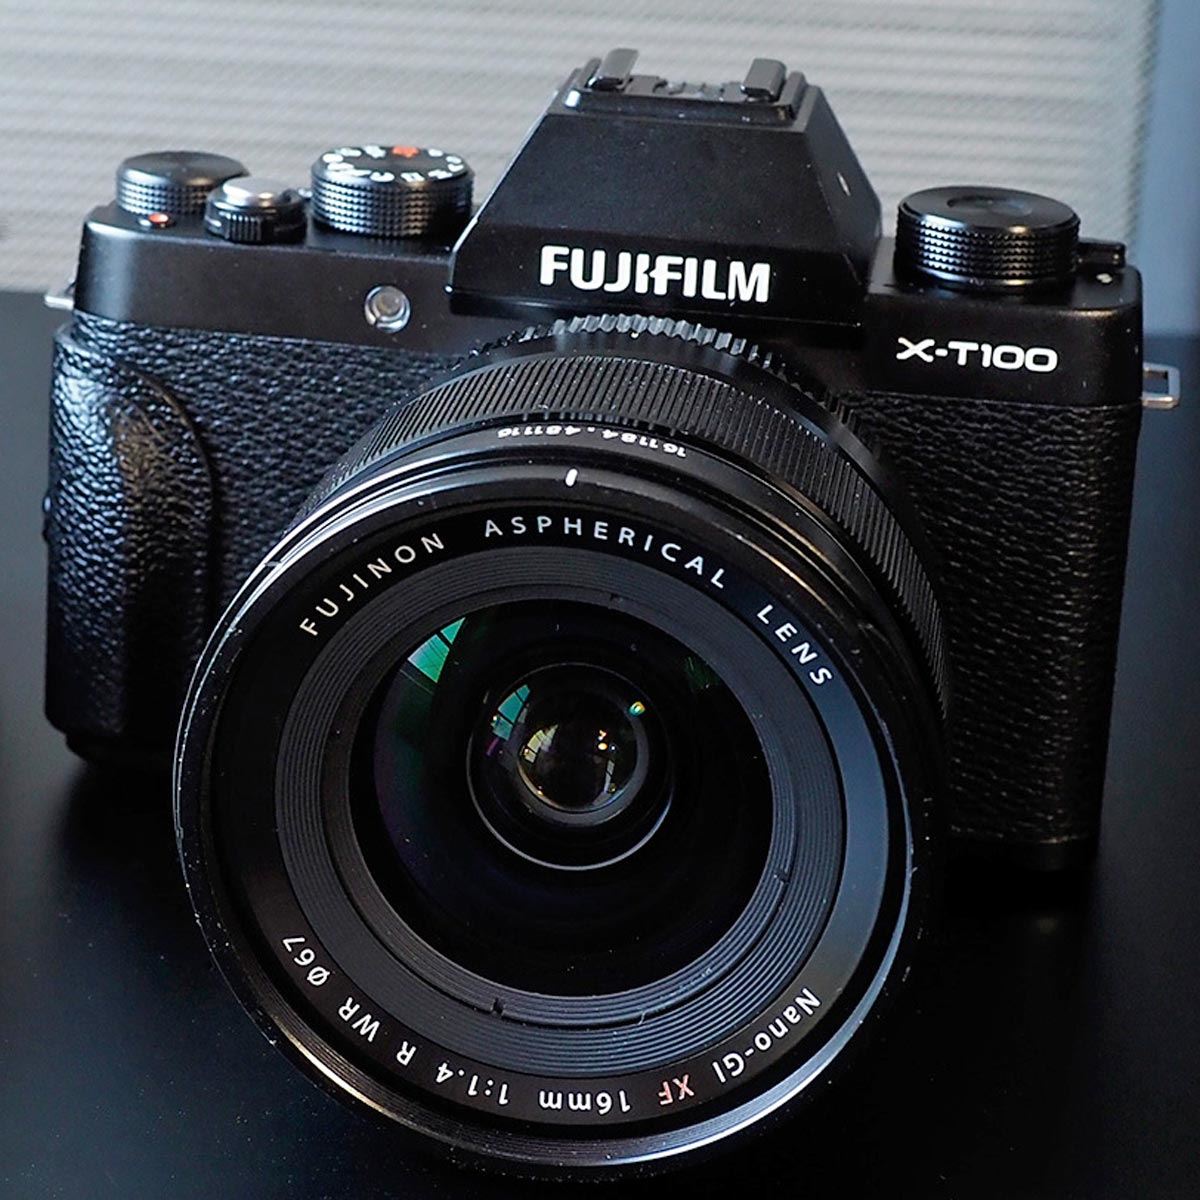 新到着 Fujifilm XT100 - 富士フィルム XT100 フィルムカメラ